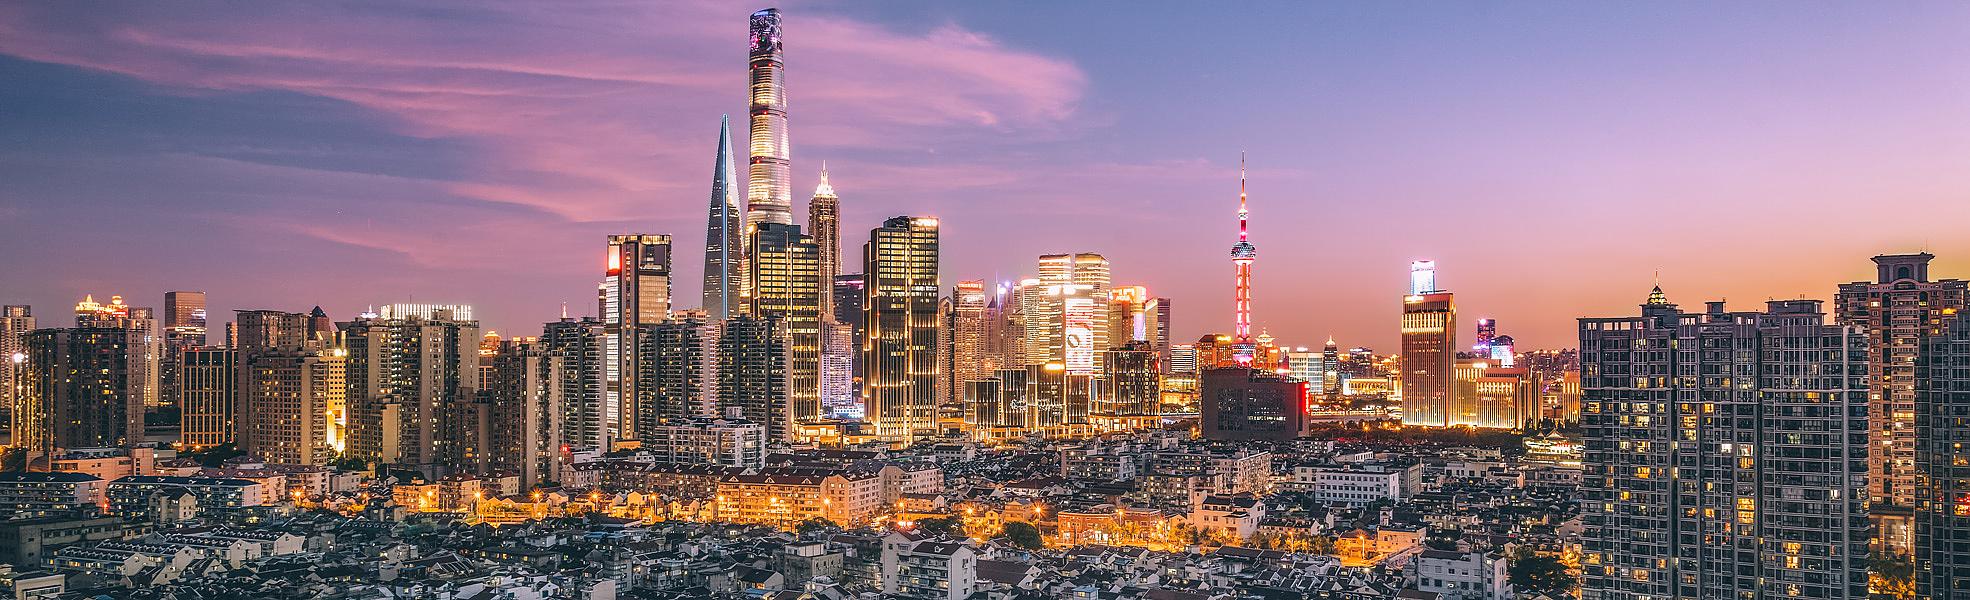 Overlook of Shanghai